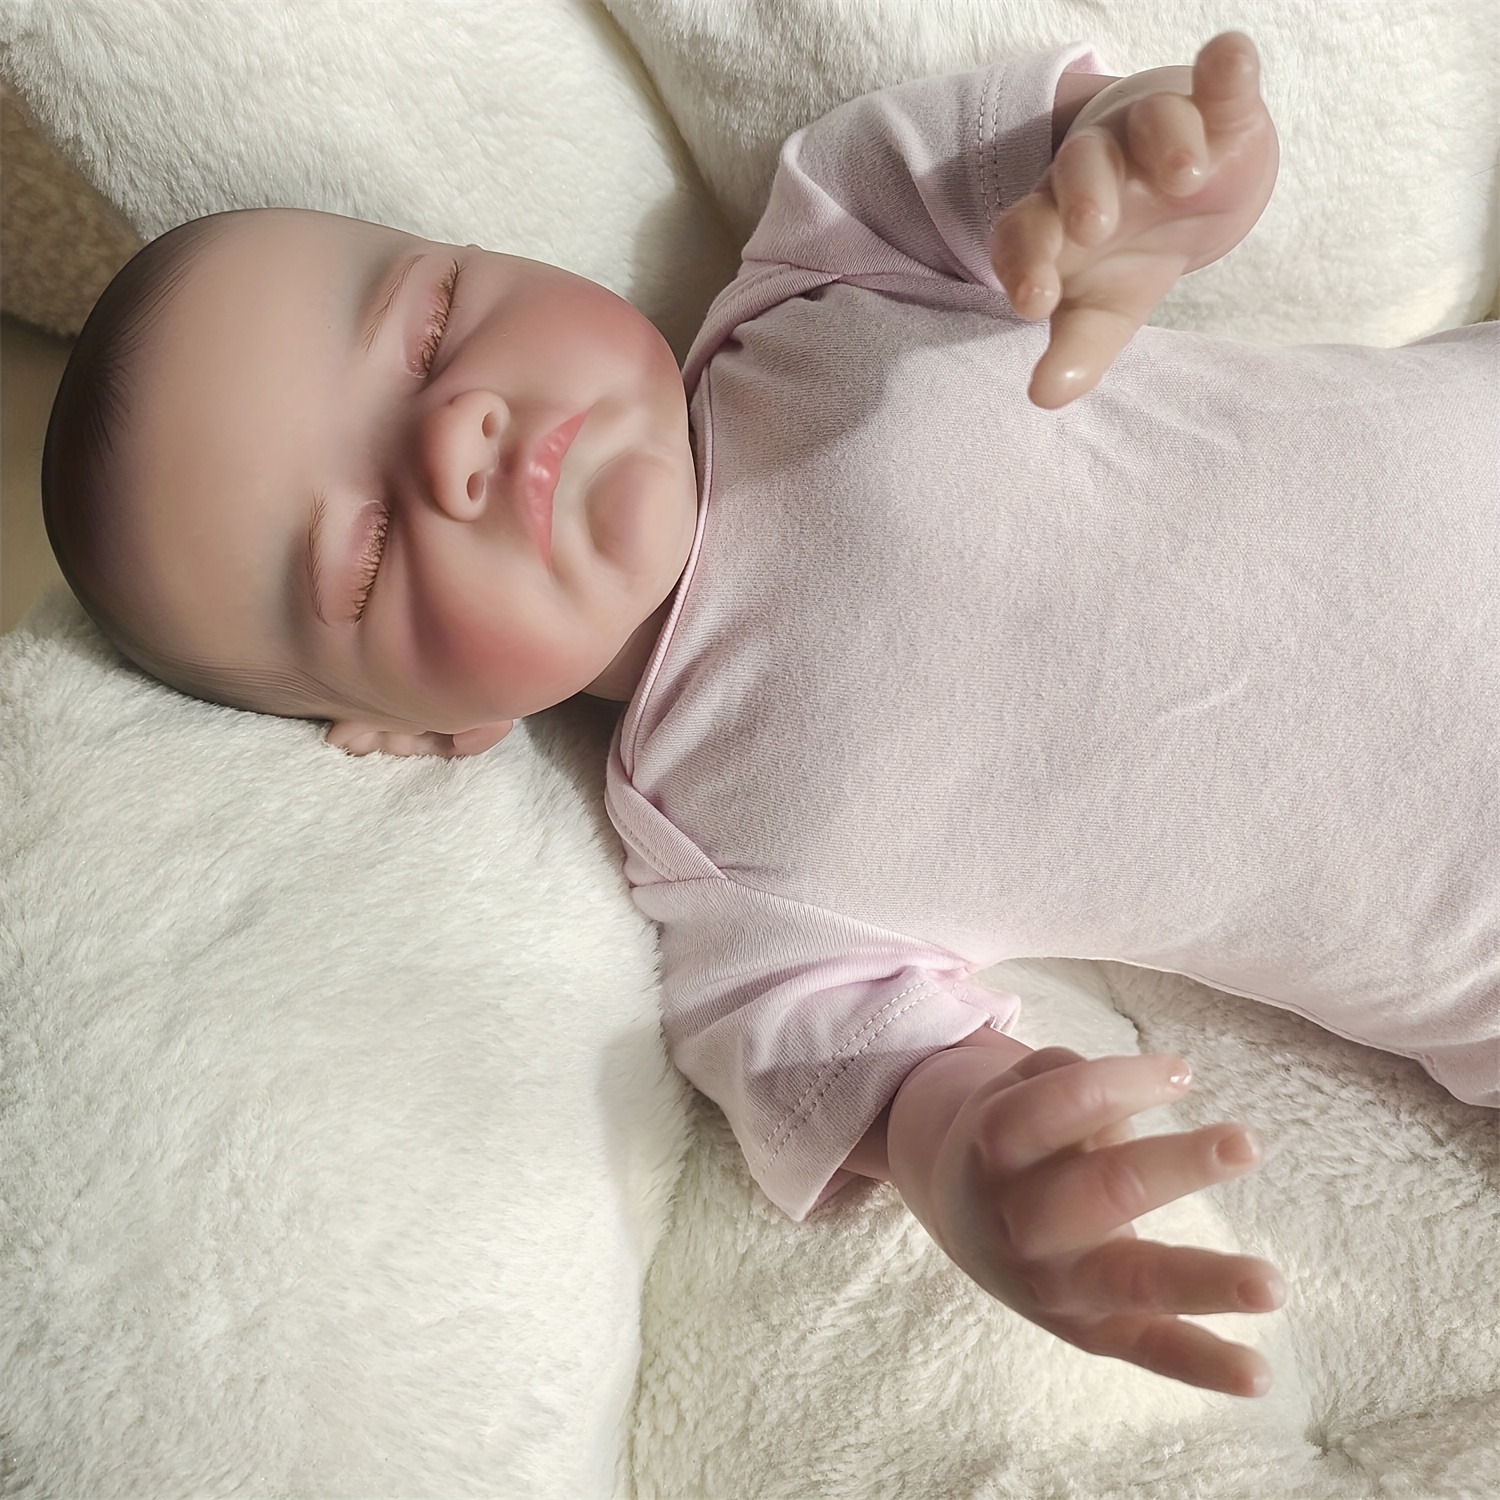 19インチ/49cmリボーンドール、リアルな柔らかいタッチの寝ている赤ちゃん、マルチレイヤーのペイントで手作りの人形